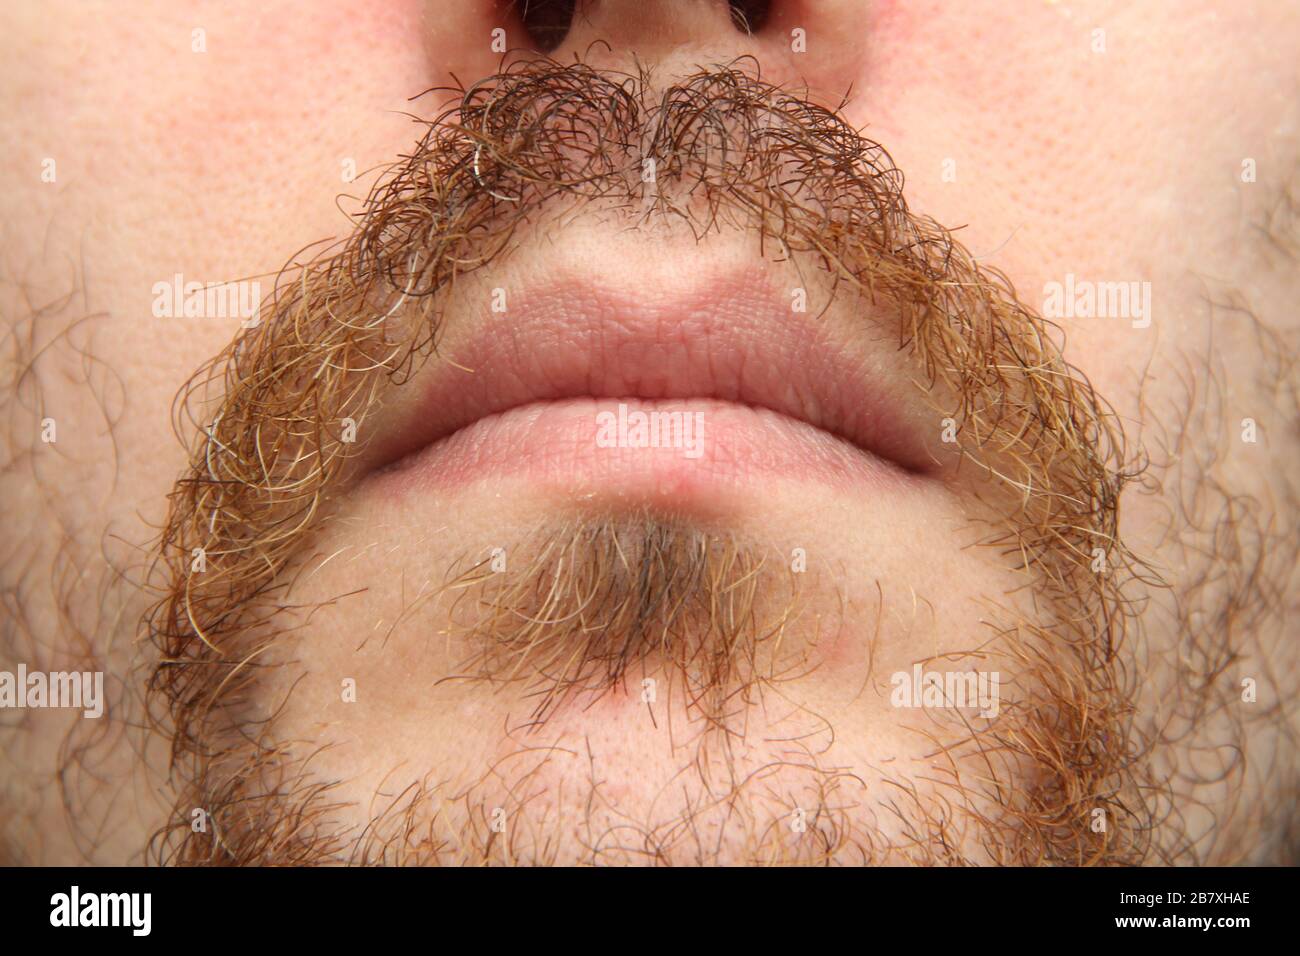 La partie inférieure du visage d'un homme blanc avec une barbe et une moustache. Banque D'Images